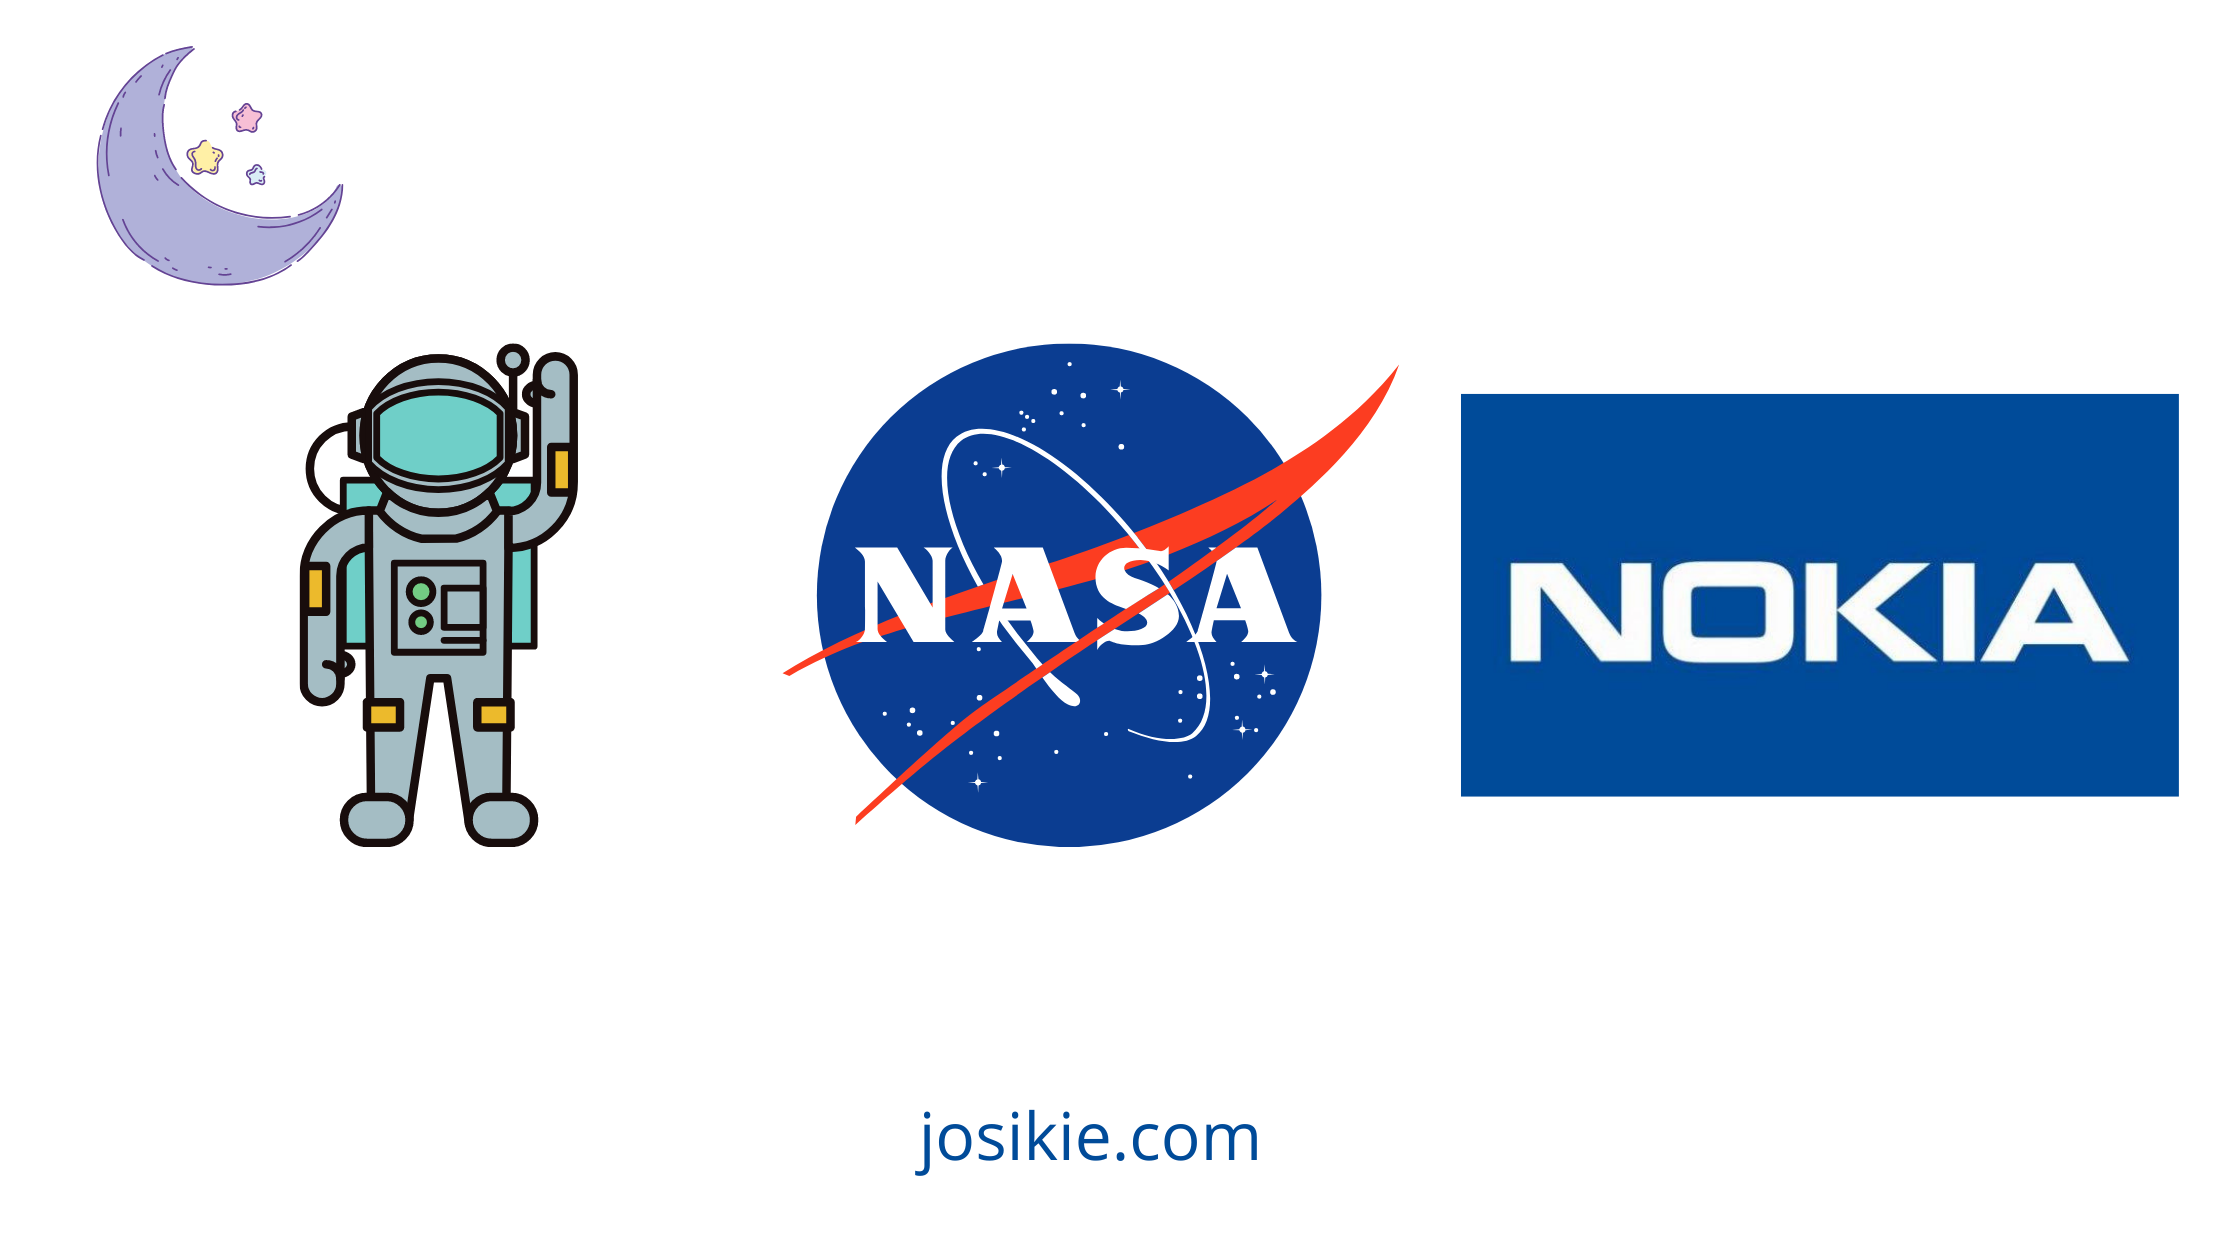 Nokia Digandeng NASA Akan Pasang 4G LTE di Bulan